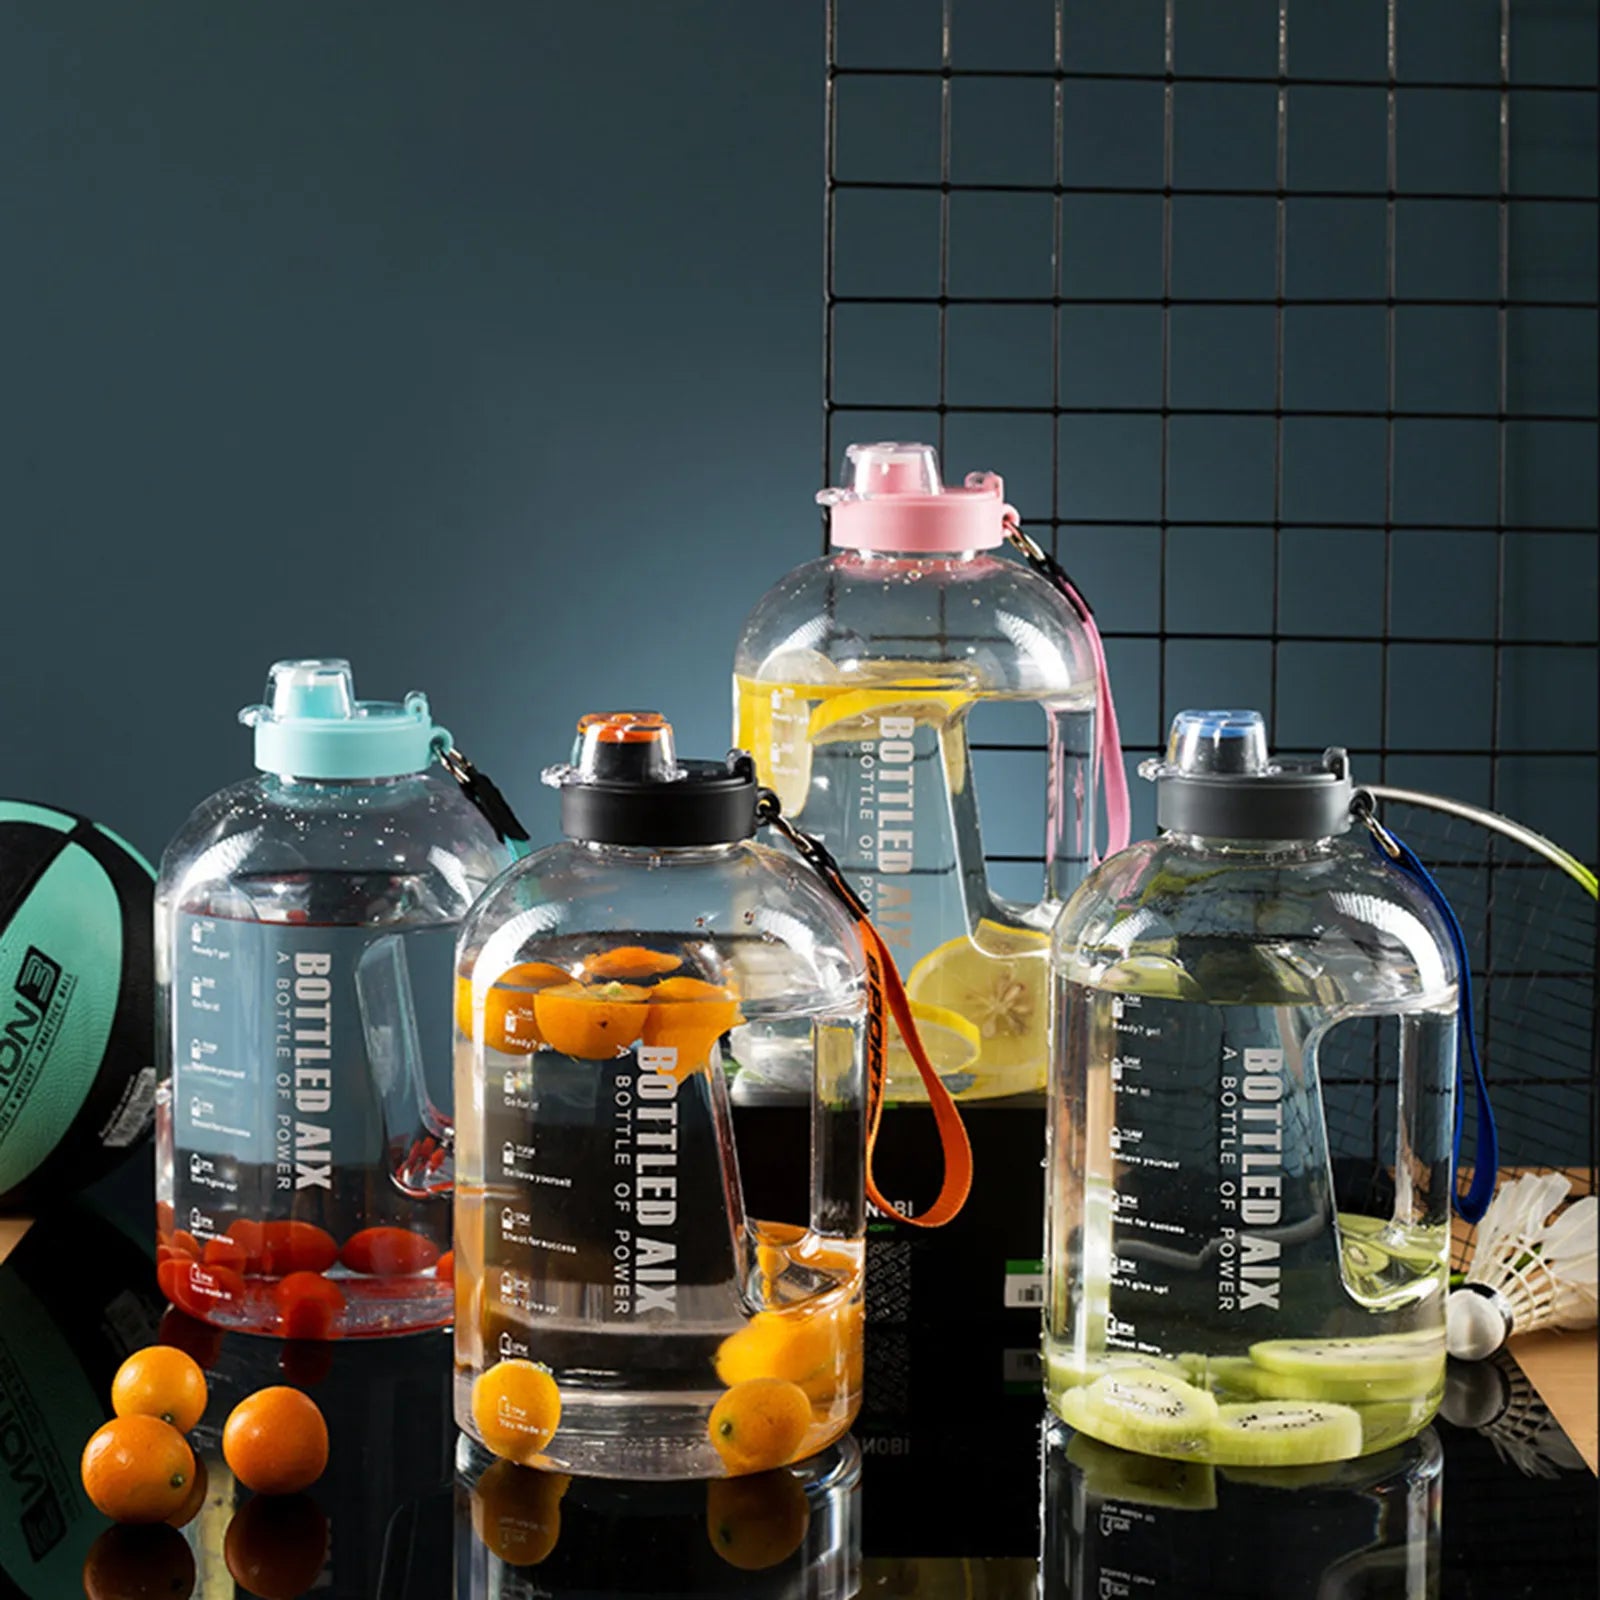 Vier transparente Sporttrinkflaschen gefuellt mit Obst und Wasser, darunter Orangen und Kiwis, auf einer dunklen Reflexionsflaeche mit einem schwarzen Gitter und Sportutensilien im Hintergrund.